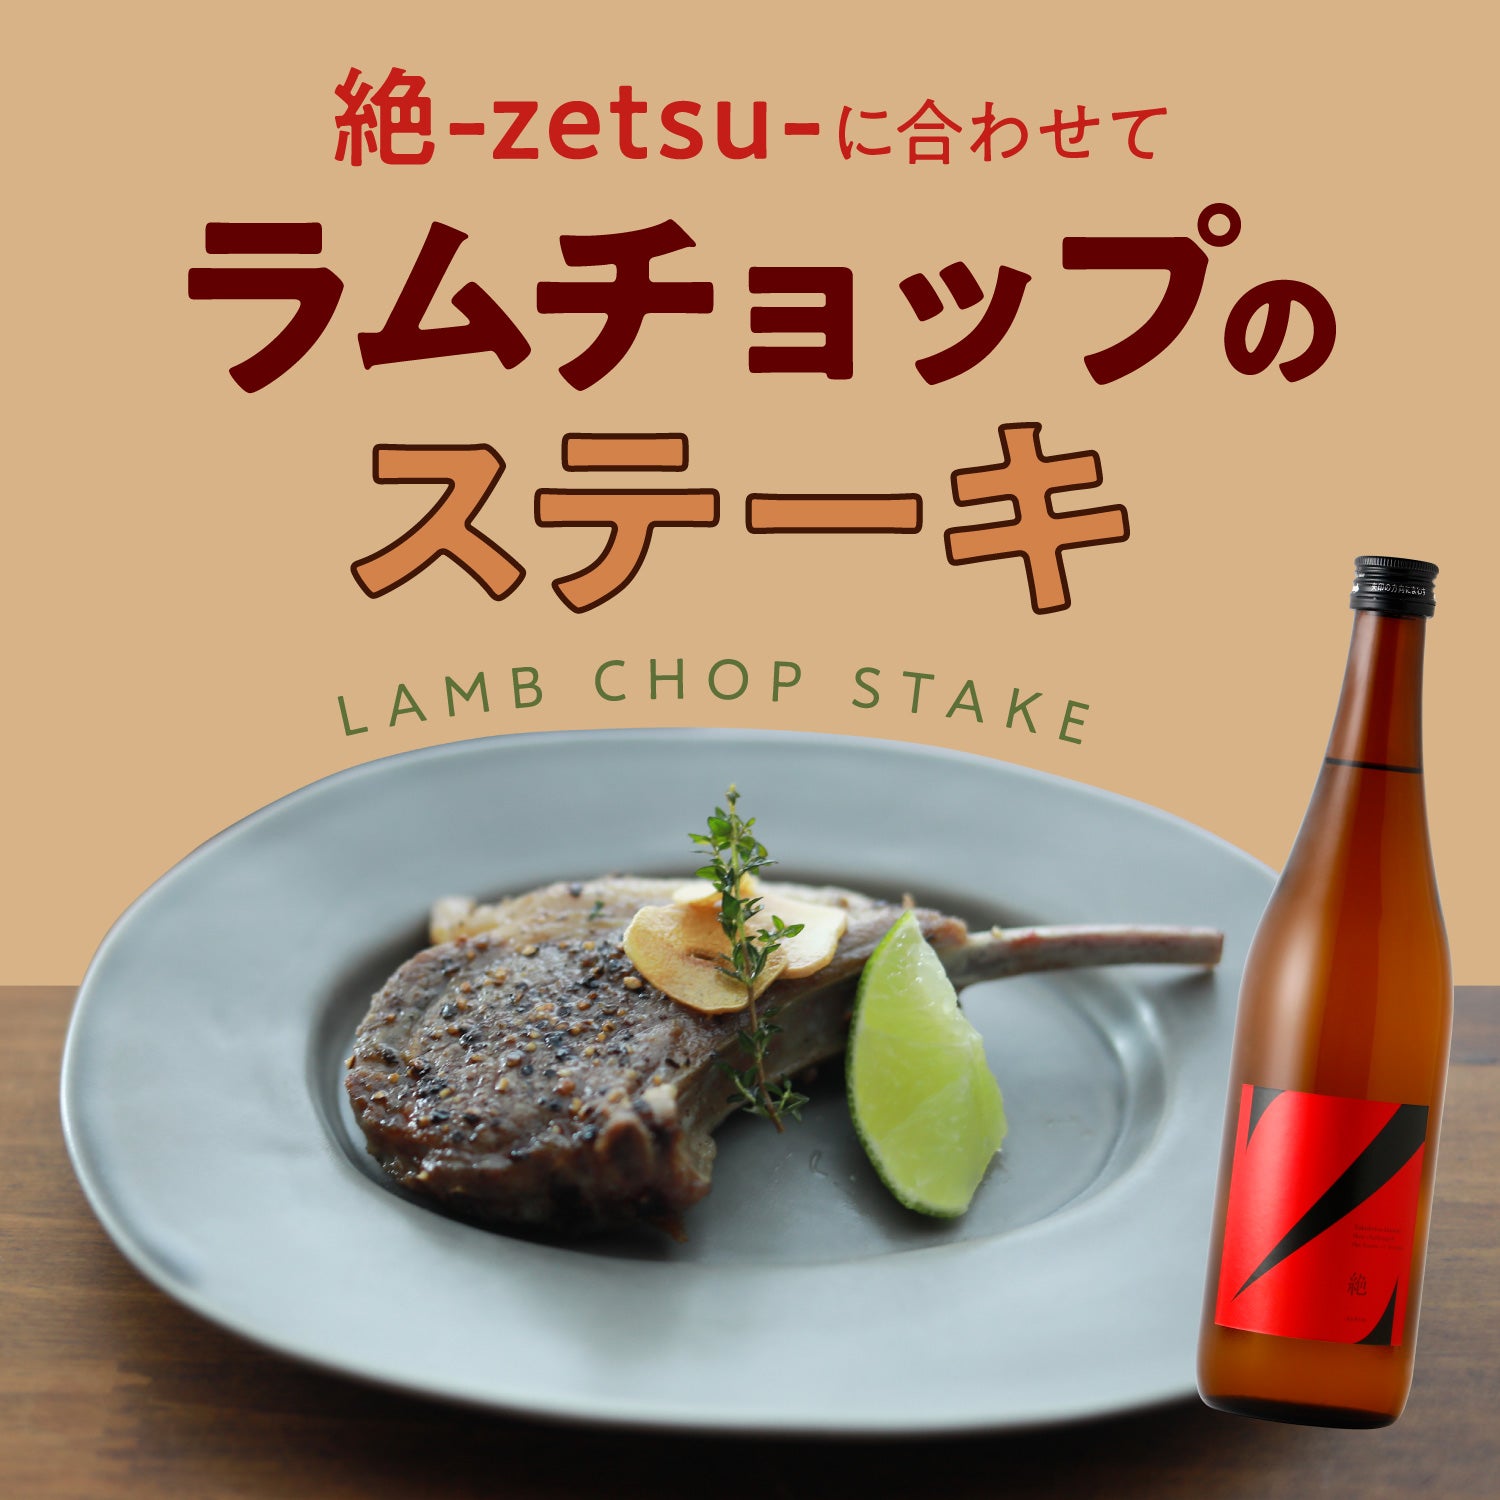 絶 -zetsu-に合わせて「ラムチョップのステーキ」